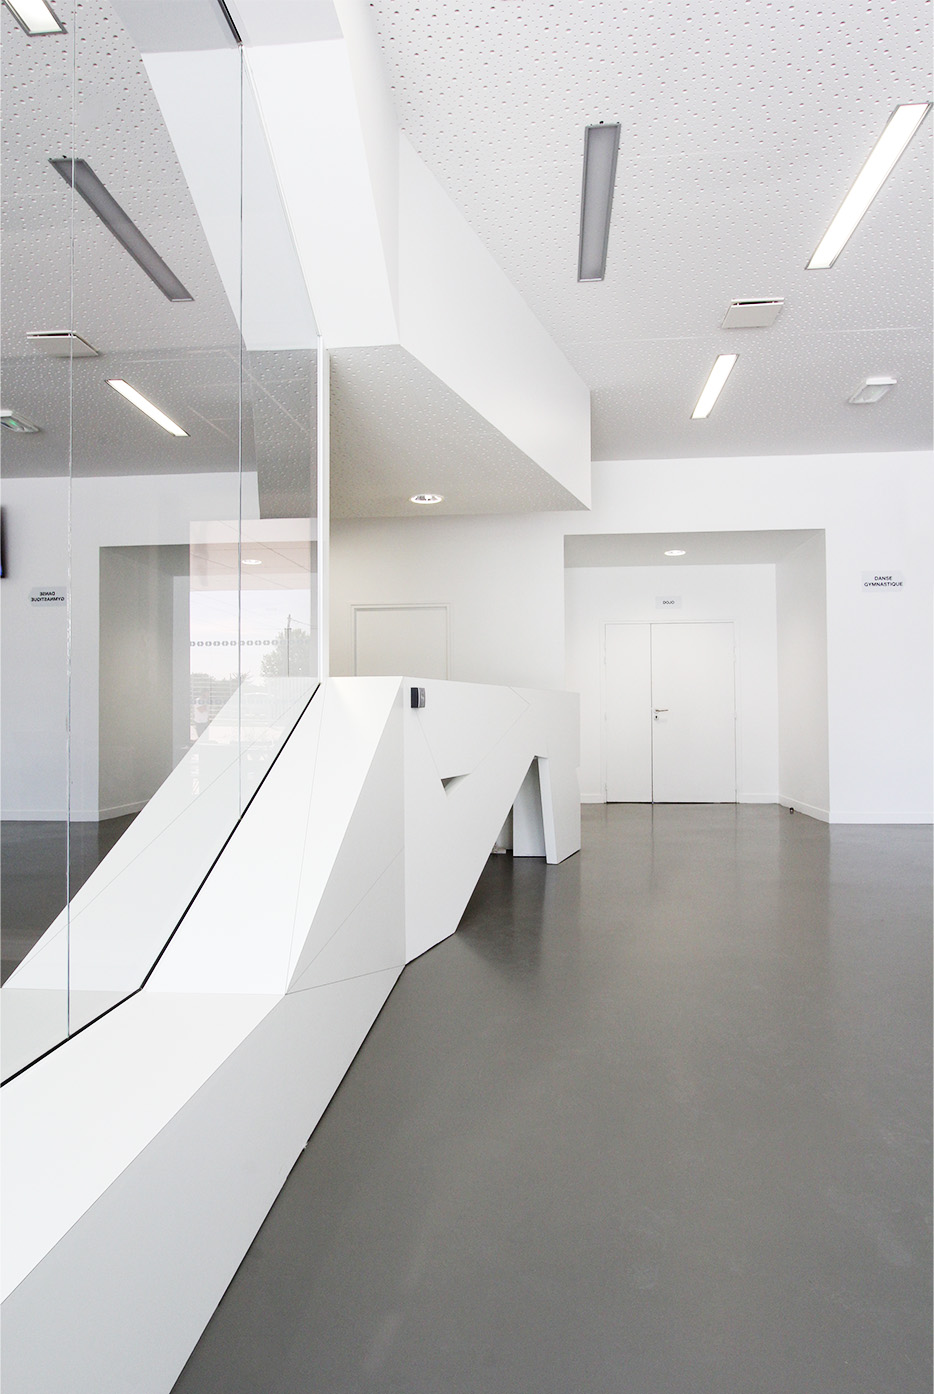 Photographie du hall d'accueil aux teintes minérales, sol béton lisse gris, murs et plafonds blancs et un pans de mur miroir